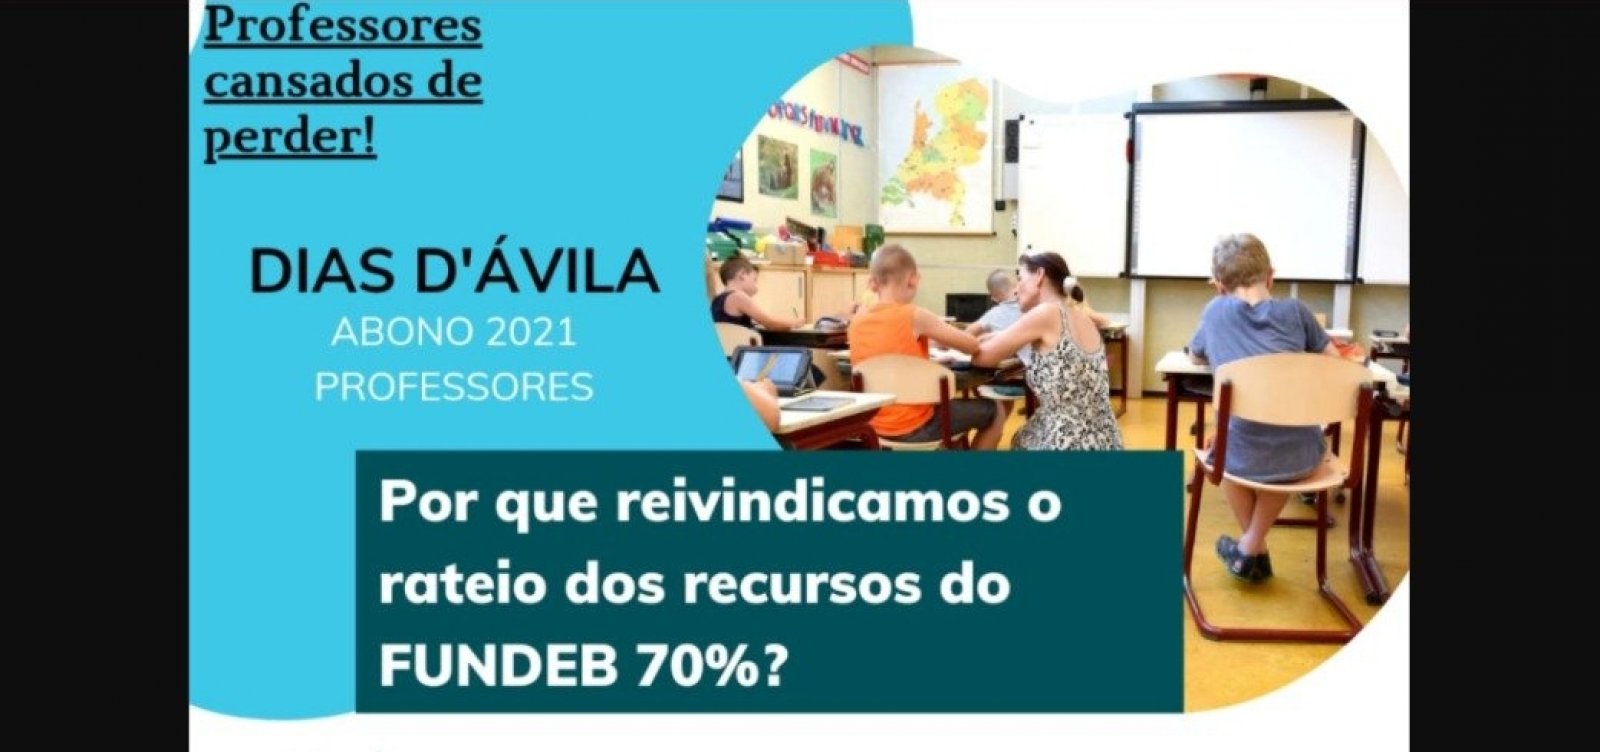 Por gastos pessoais com aulas remotas, professores pedem rateio do Fundeb em Dias D'Ávila